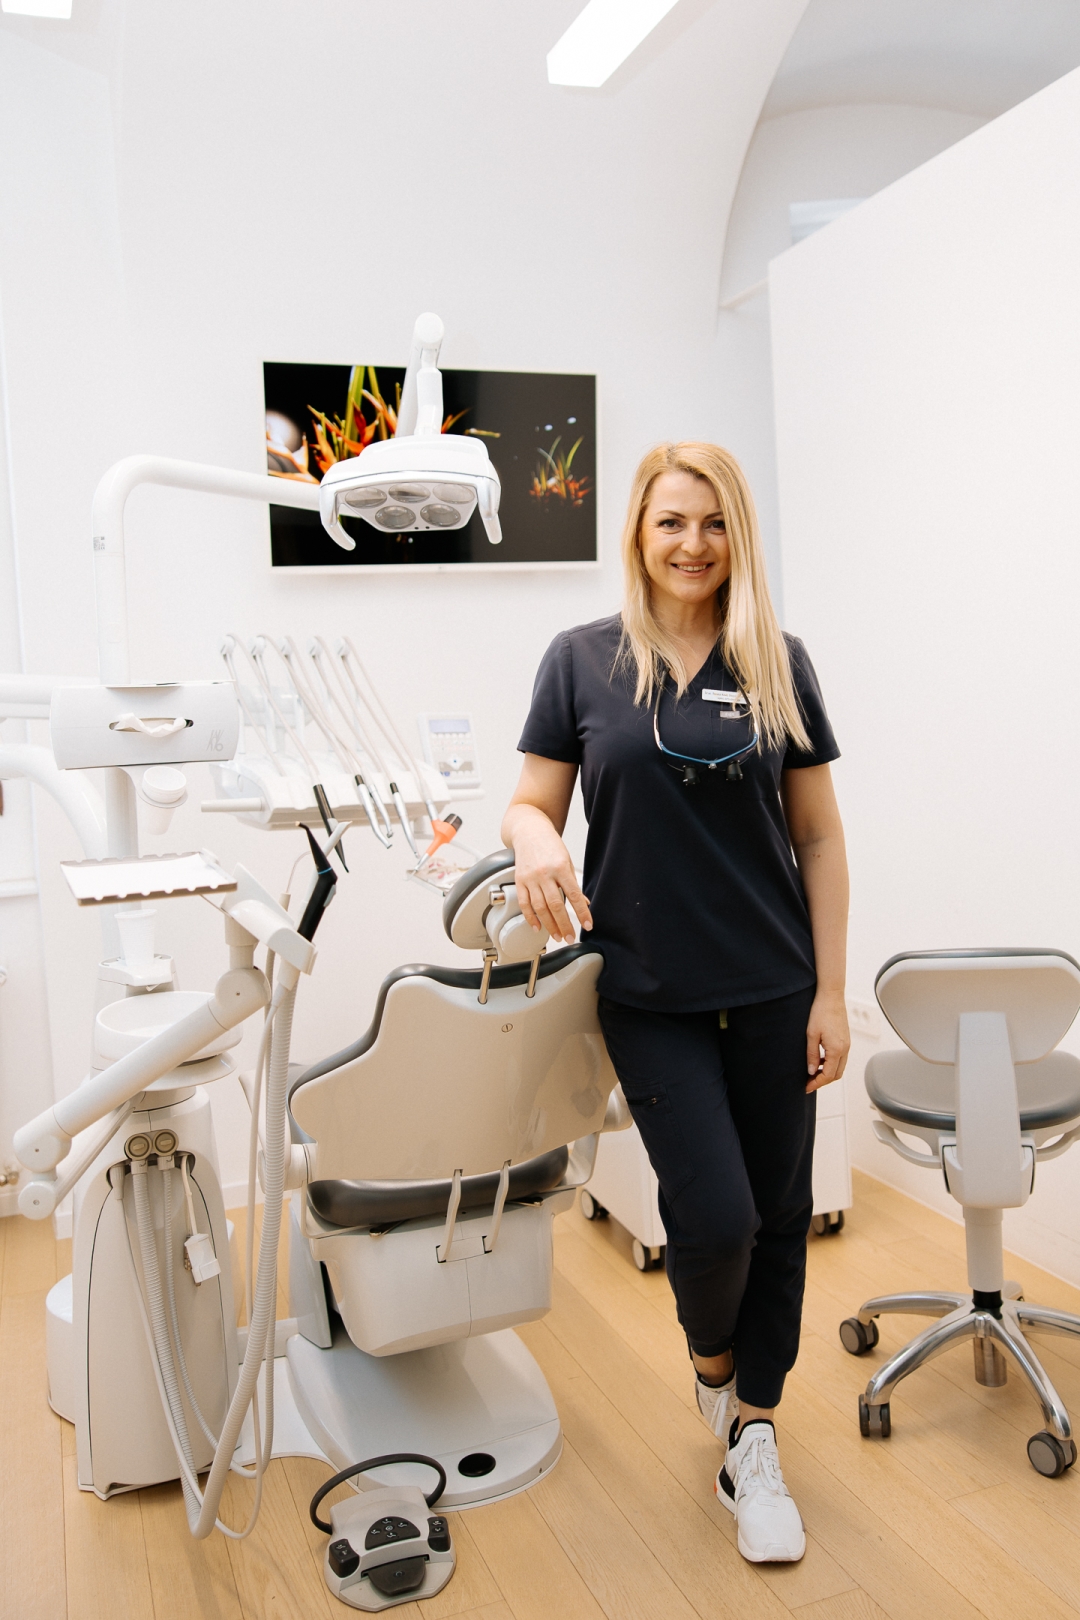 Od dr. sc. Renate Kevilj Gospić iz prve smo ruke saznali sve o Invisalign ortodontskoj terapiji